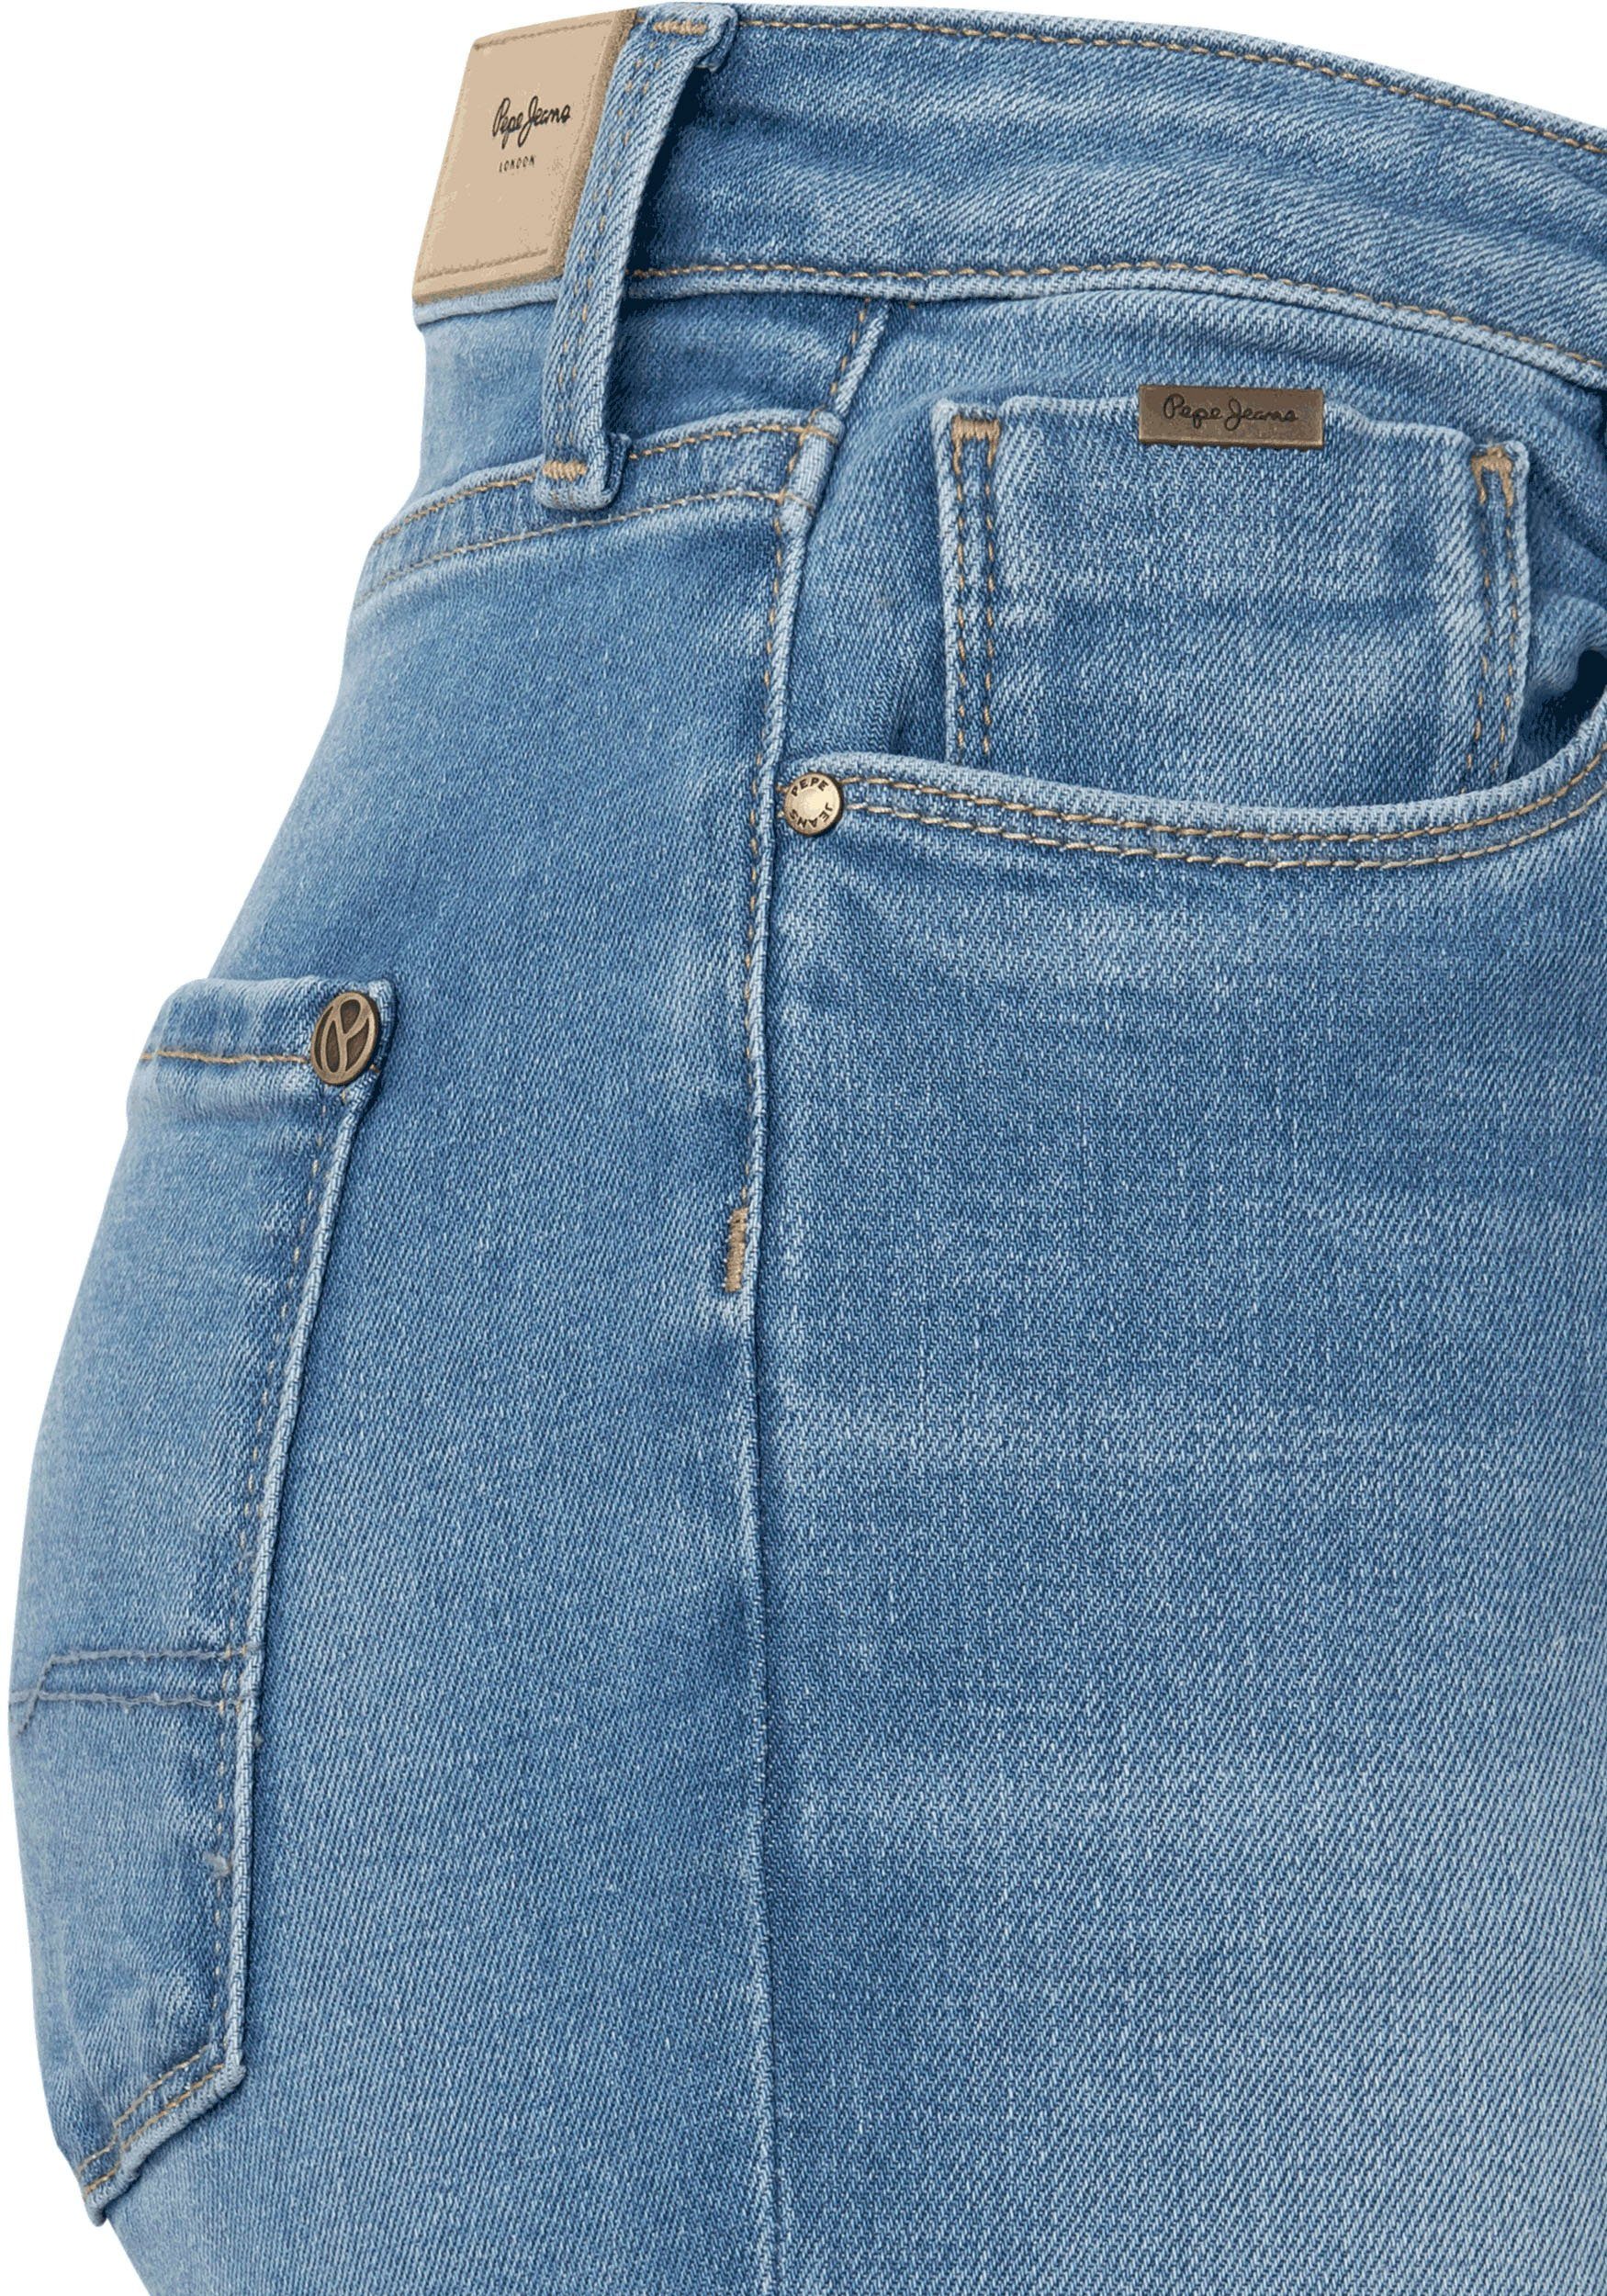 Damen Jeans Pepe Jeans Bootcut-Jeans DION FLARE mit hohem Bund, Stretch-Anteil und in 7/8-Länge